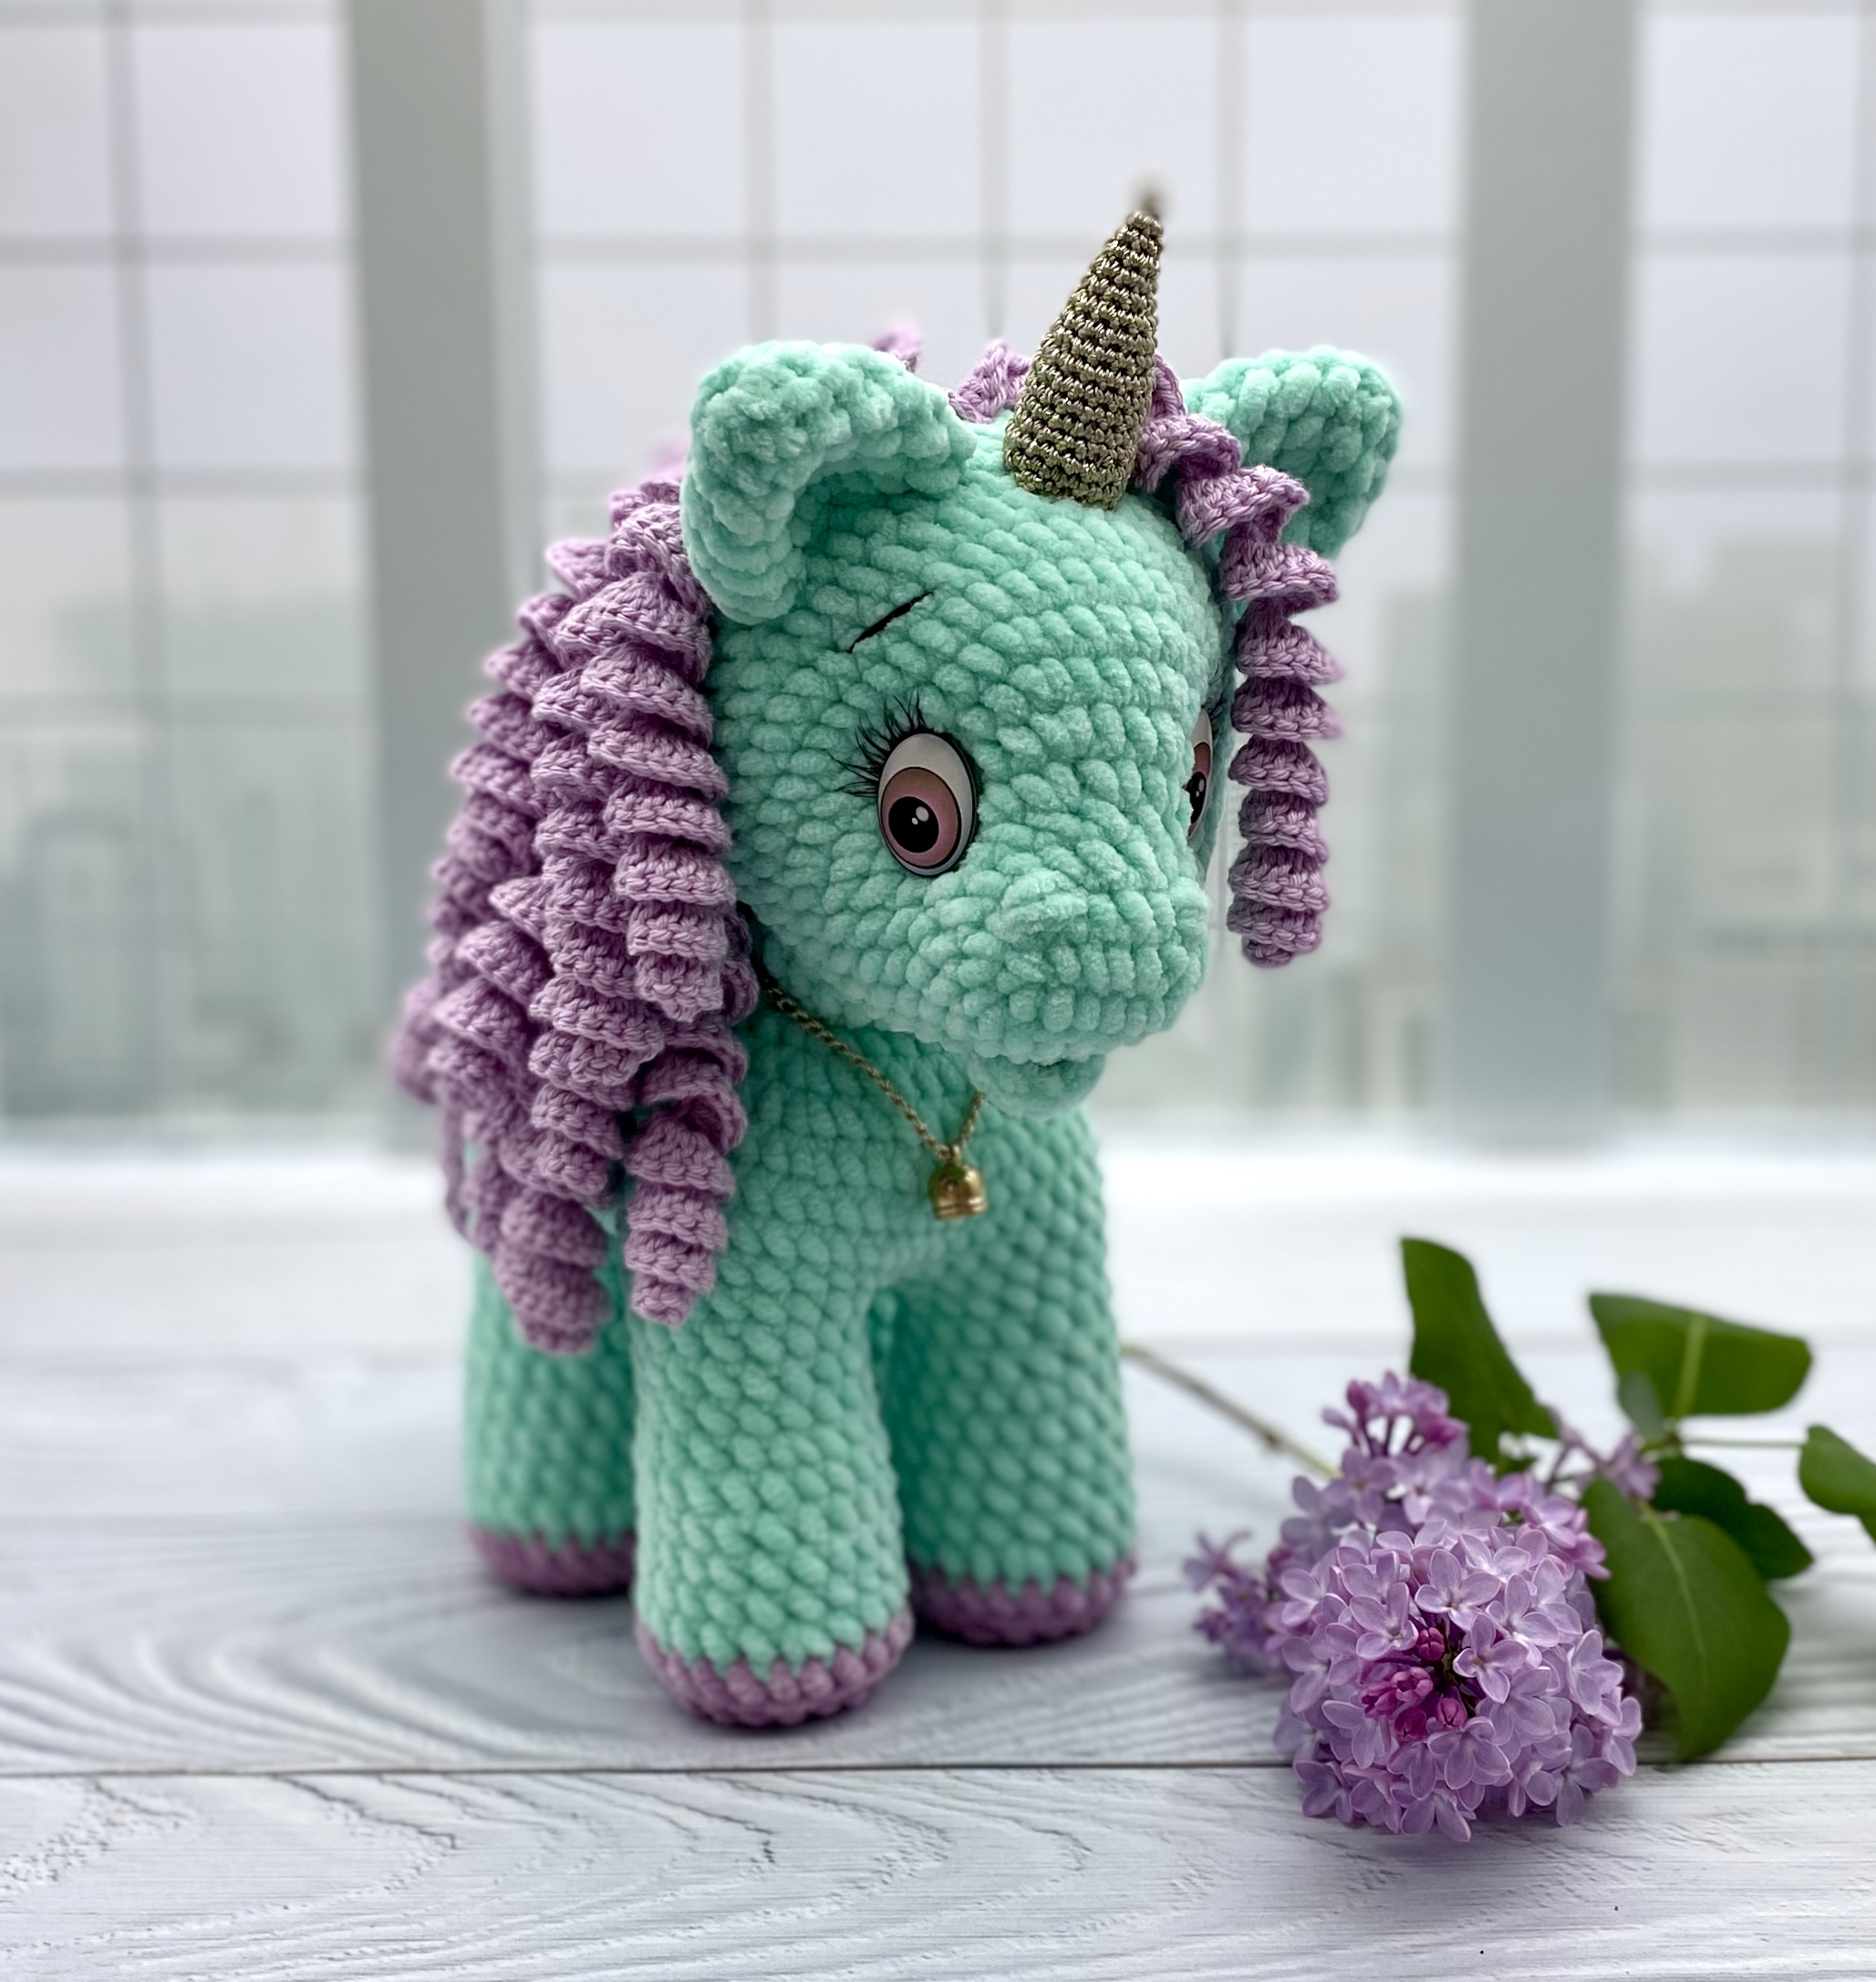 Unicorn Curly Sue crochet pattern in English by Aleniya2